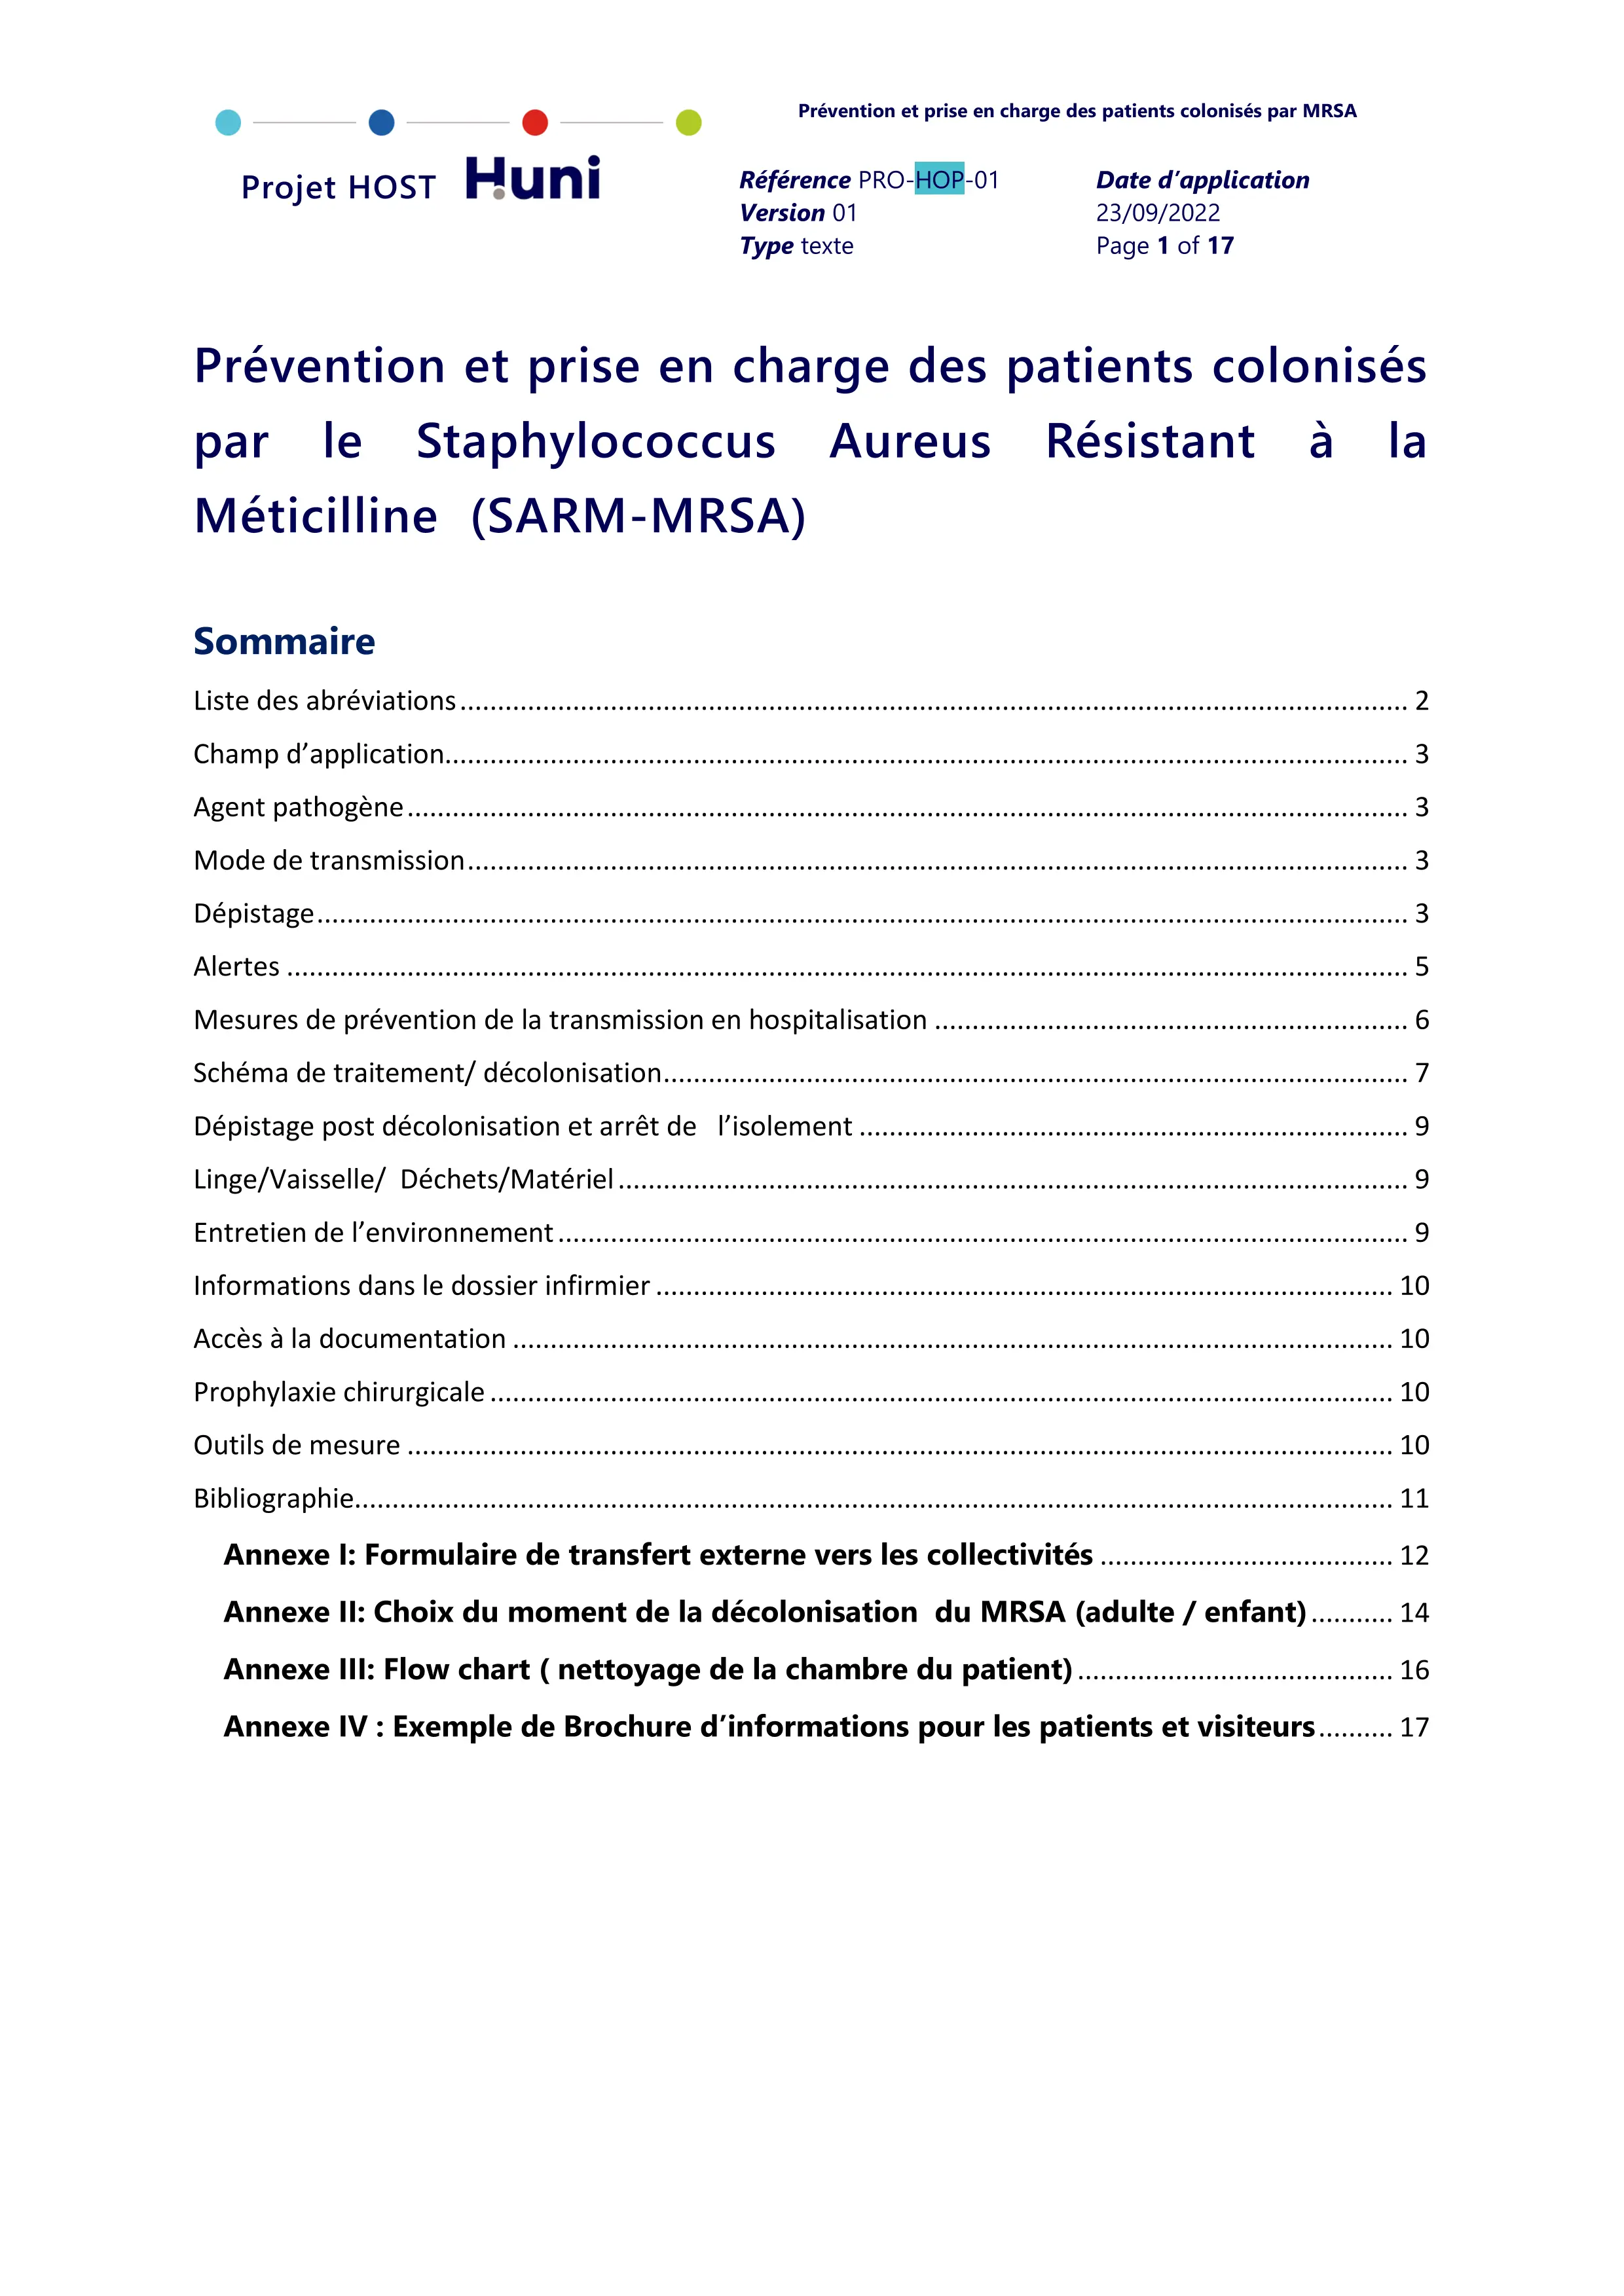 preview of prevention-et-prise-en-charge-patients-mrsa_v01.pdf